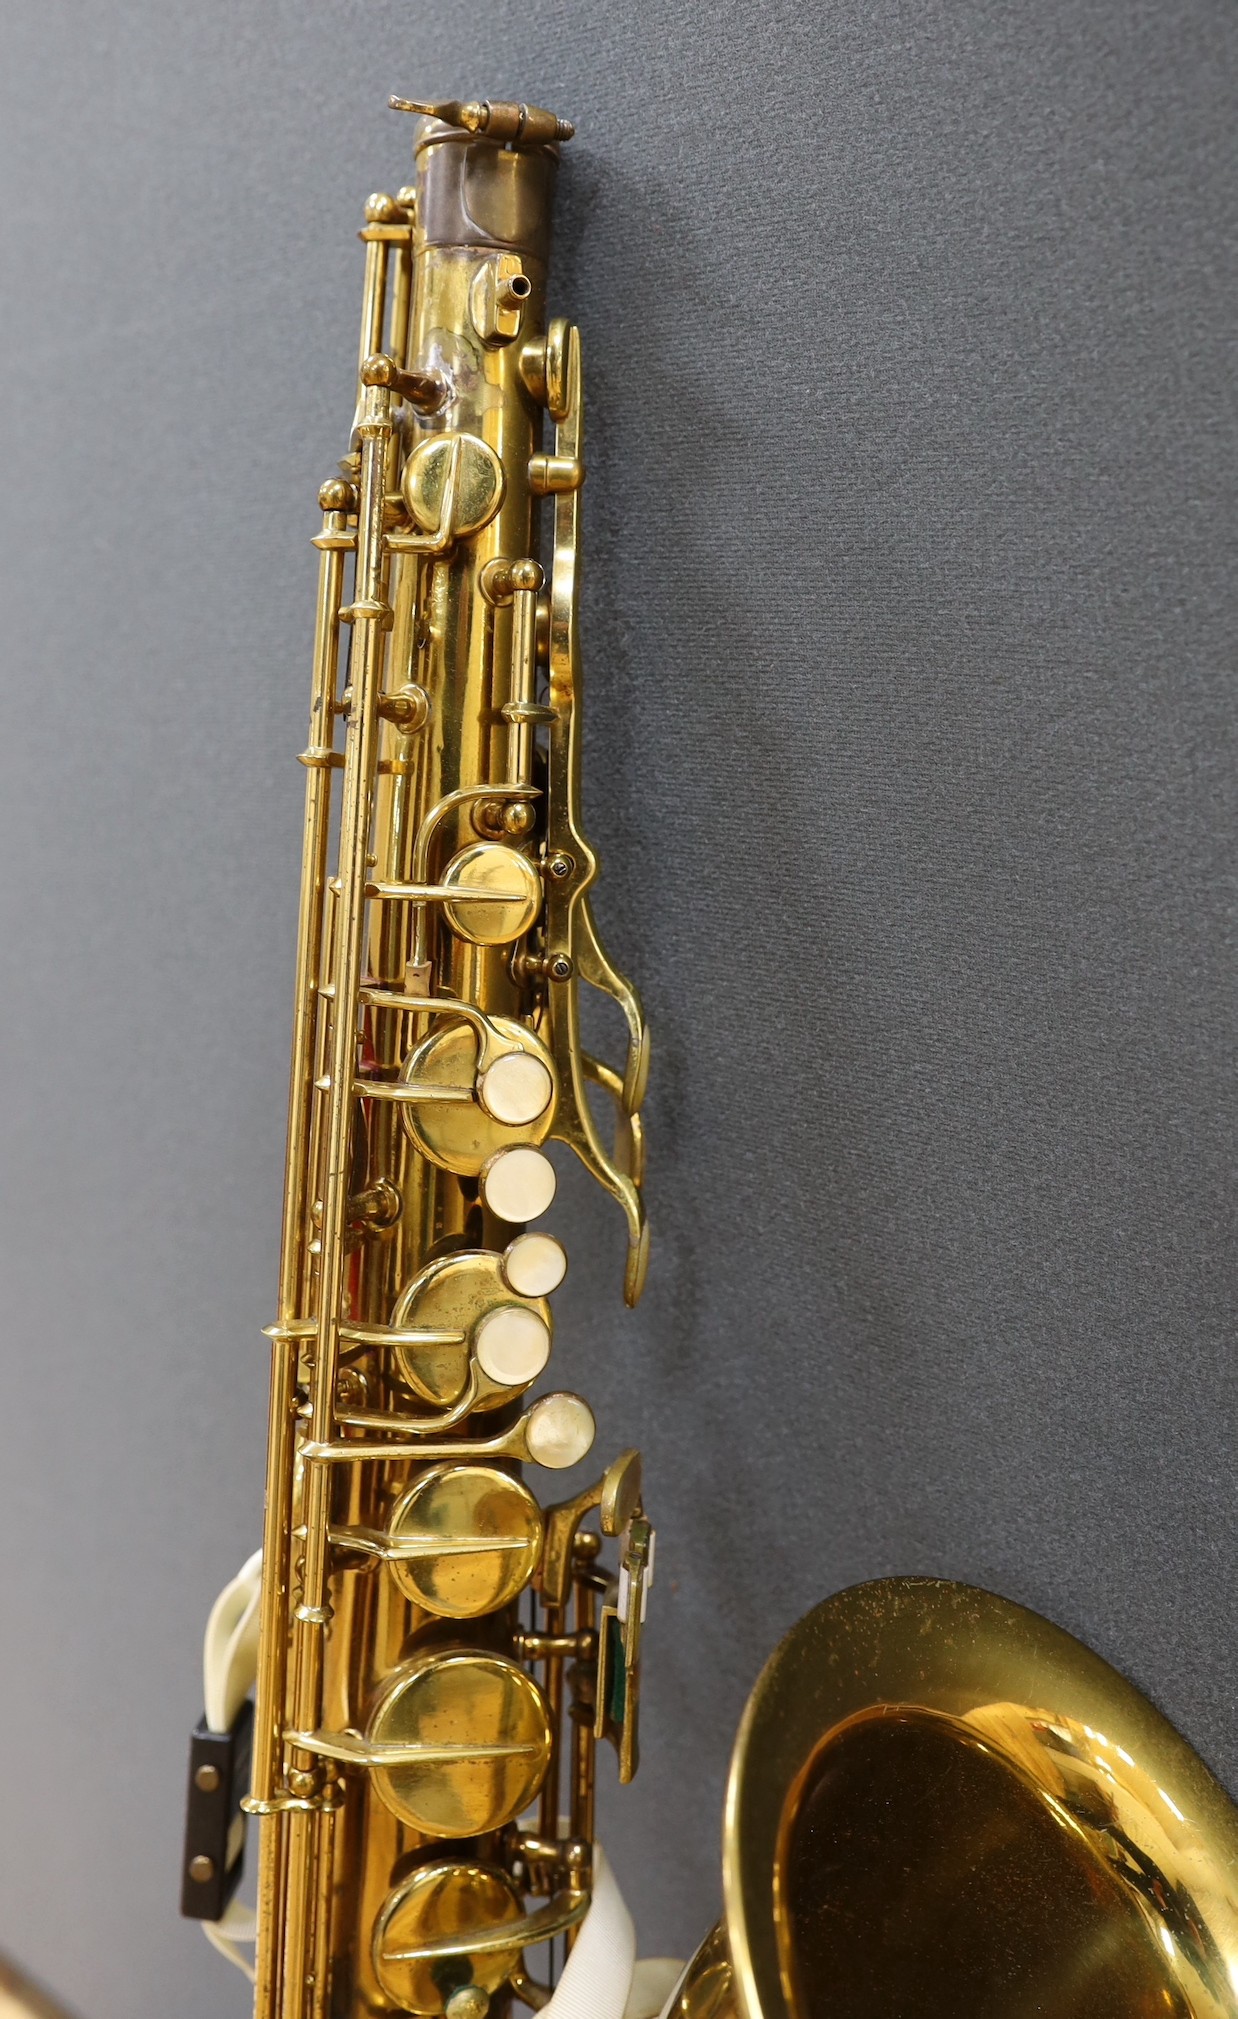 A cased Selmer Pennsylvania special tenor saxophone